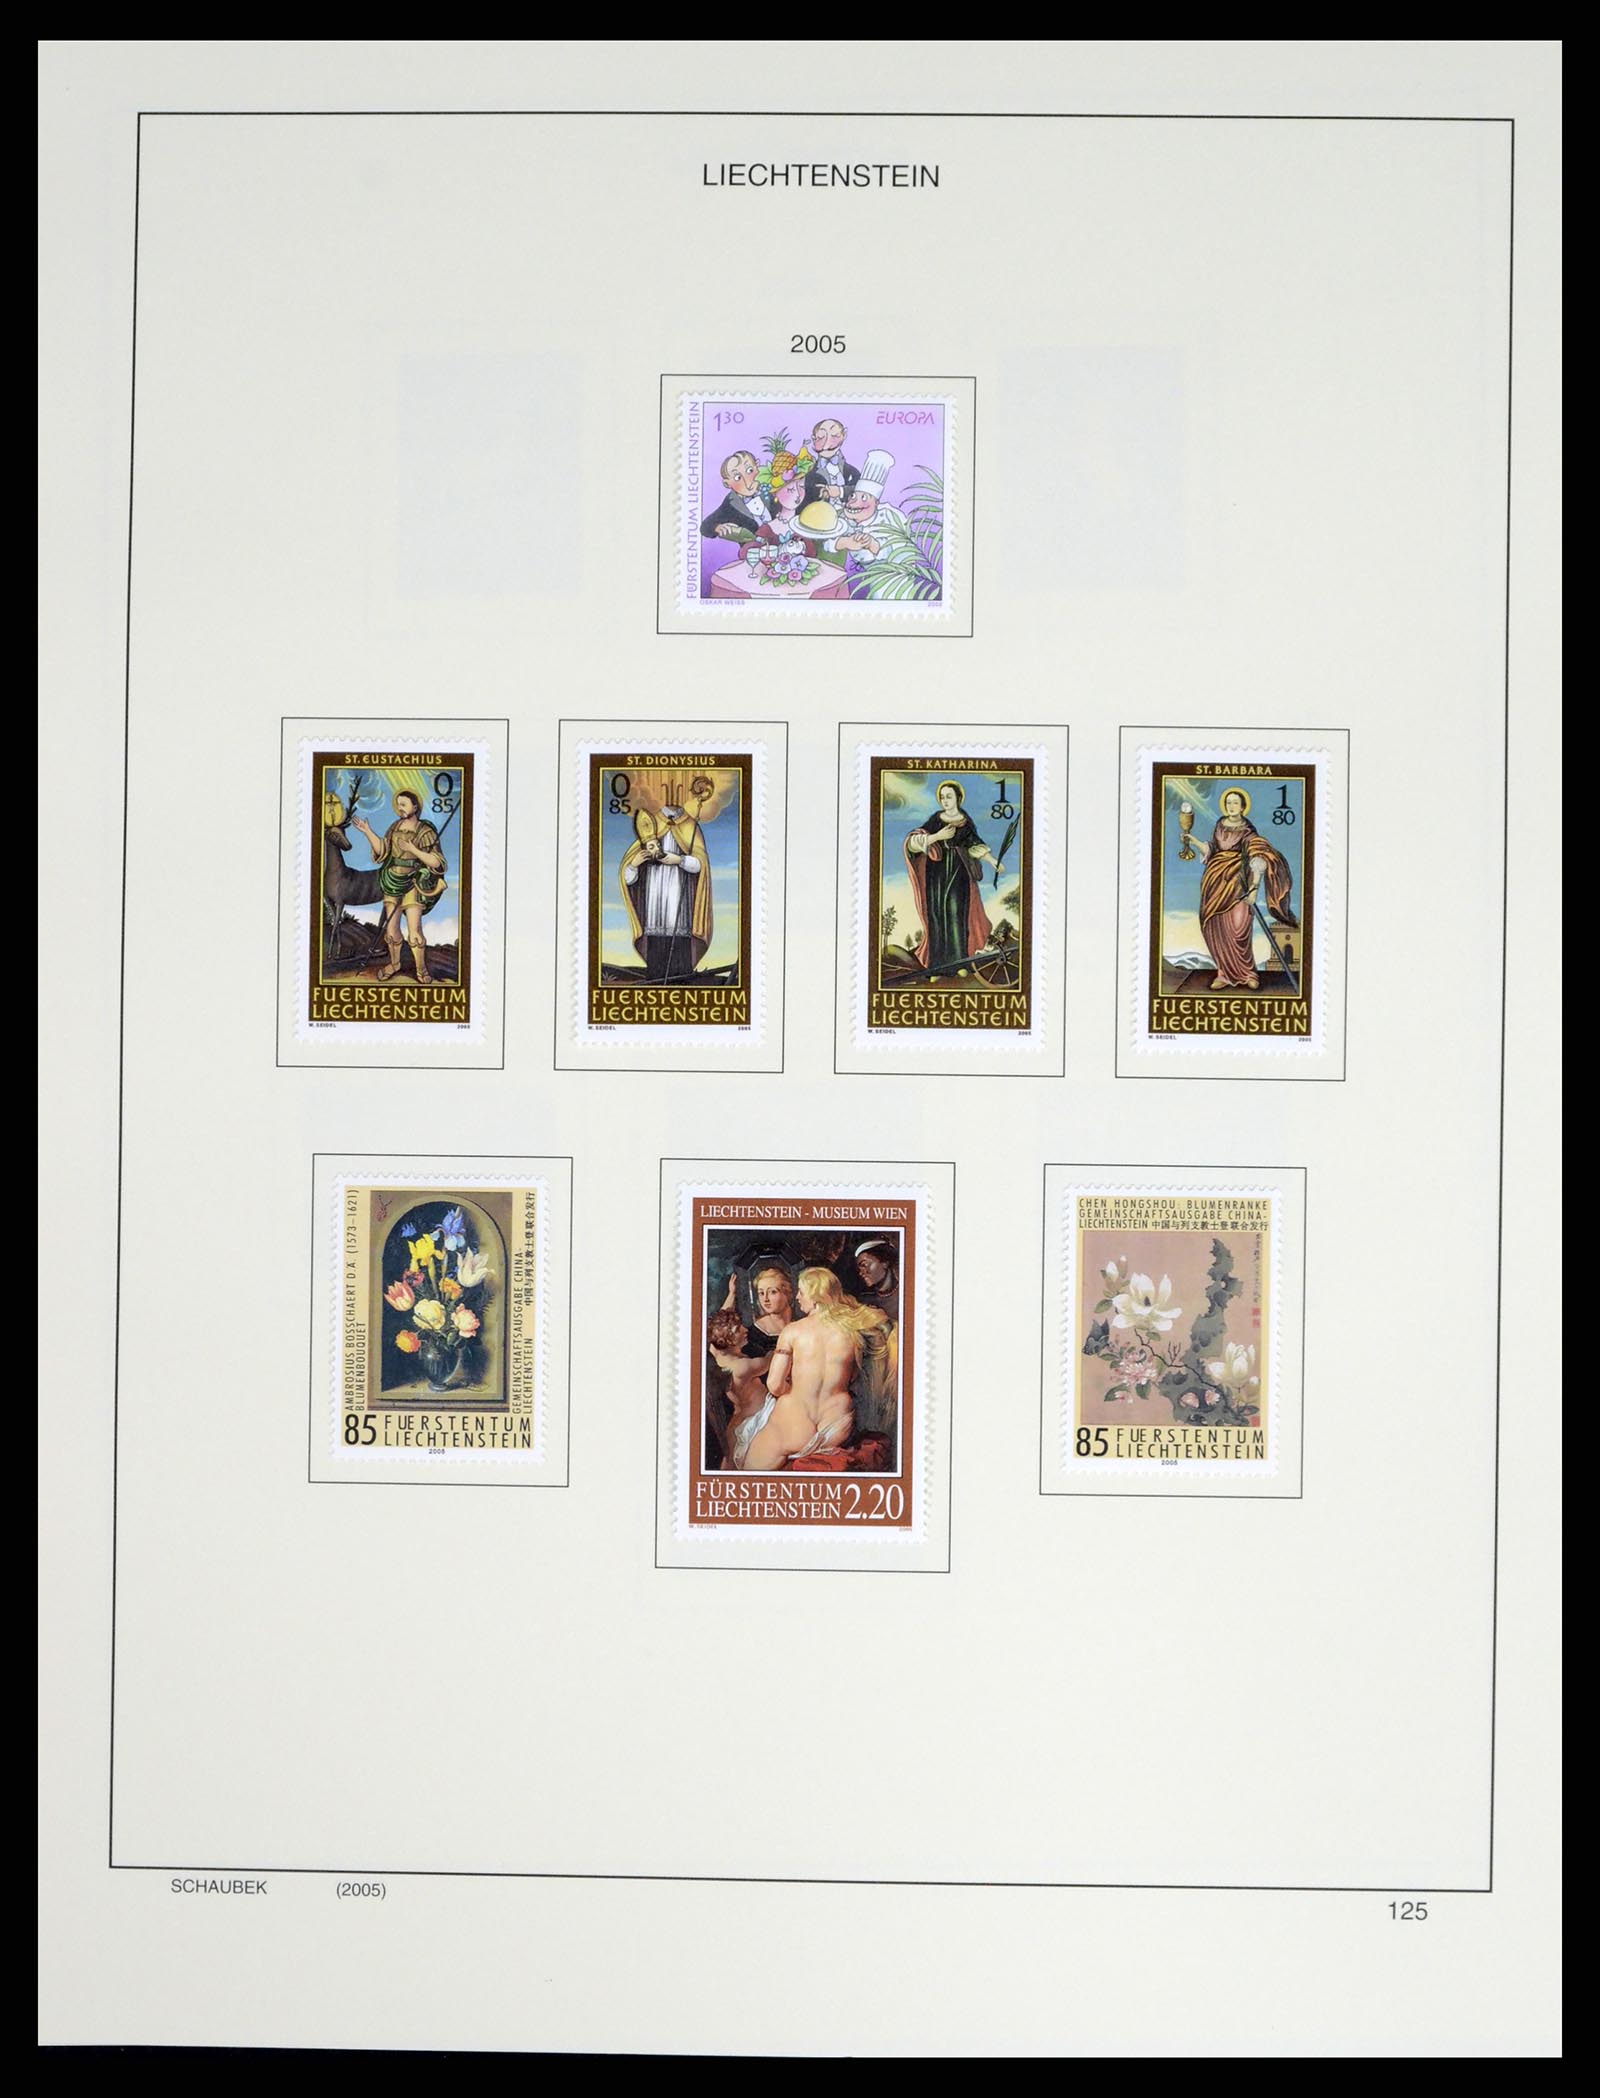 37547 148 - Stamp collection 37547 Liechtenstein 1912-2011.